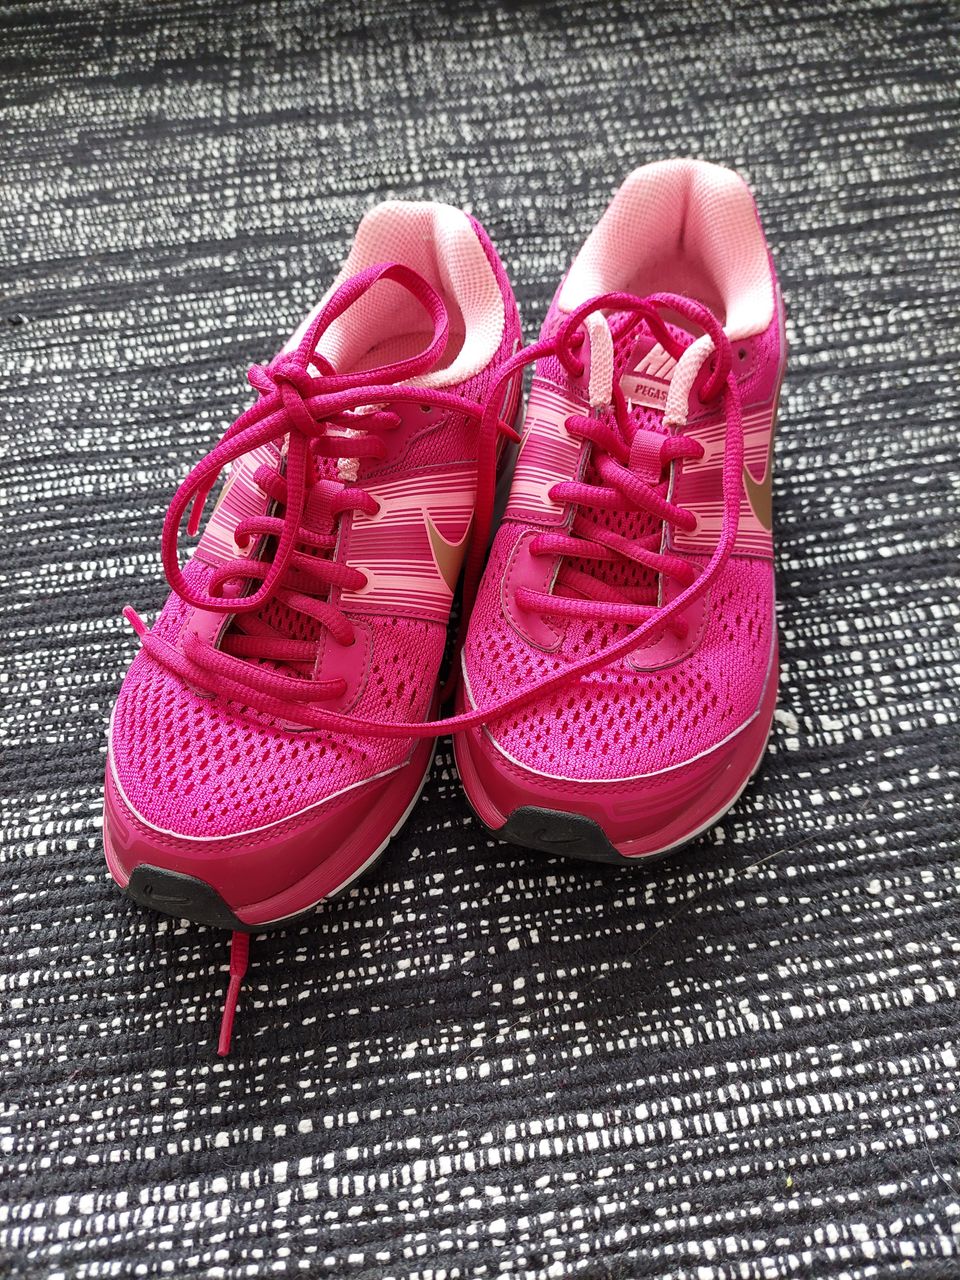 Pinkit Nike fitsole -kengät 35,5